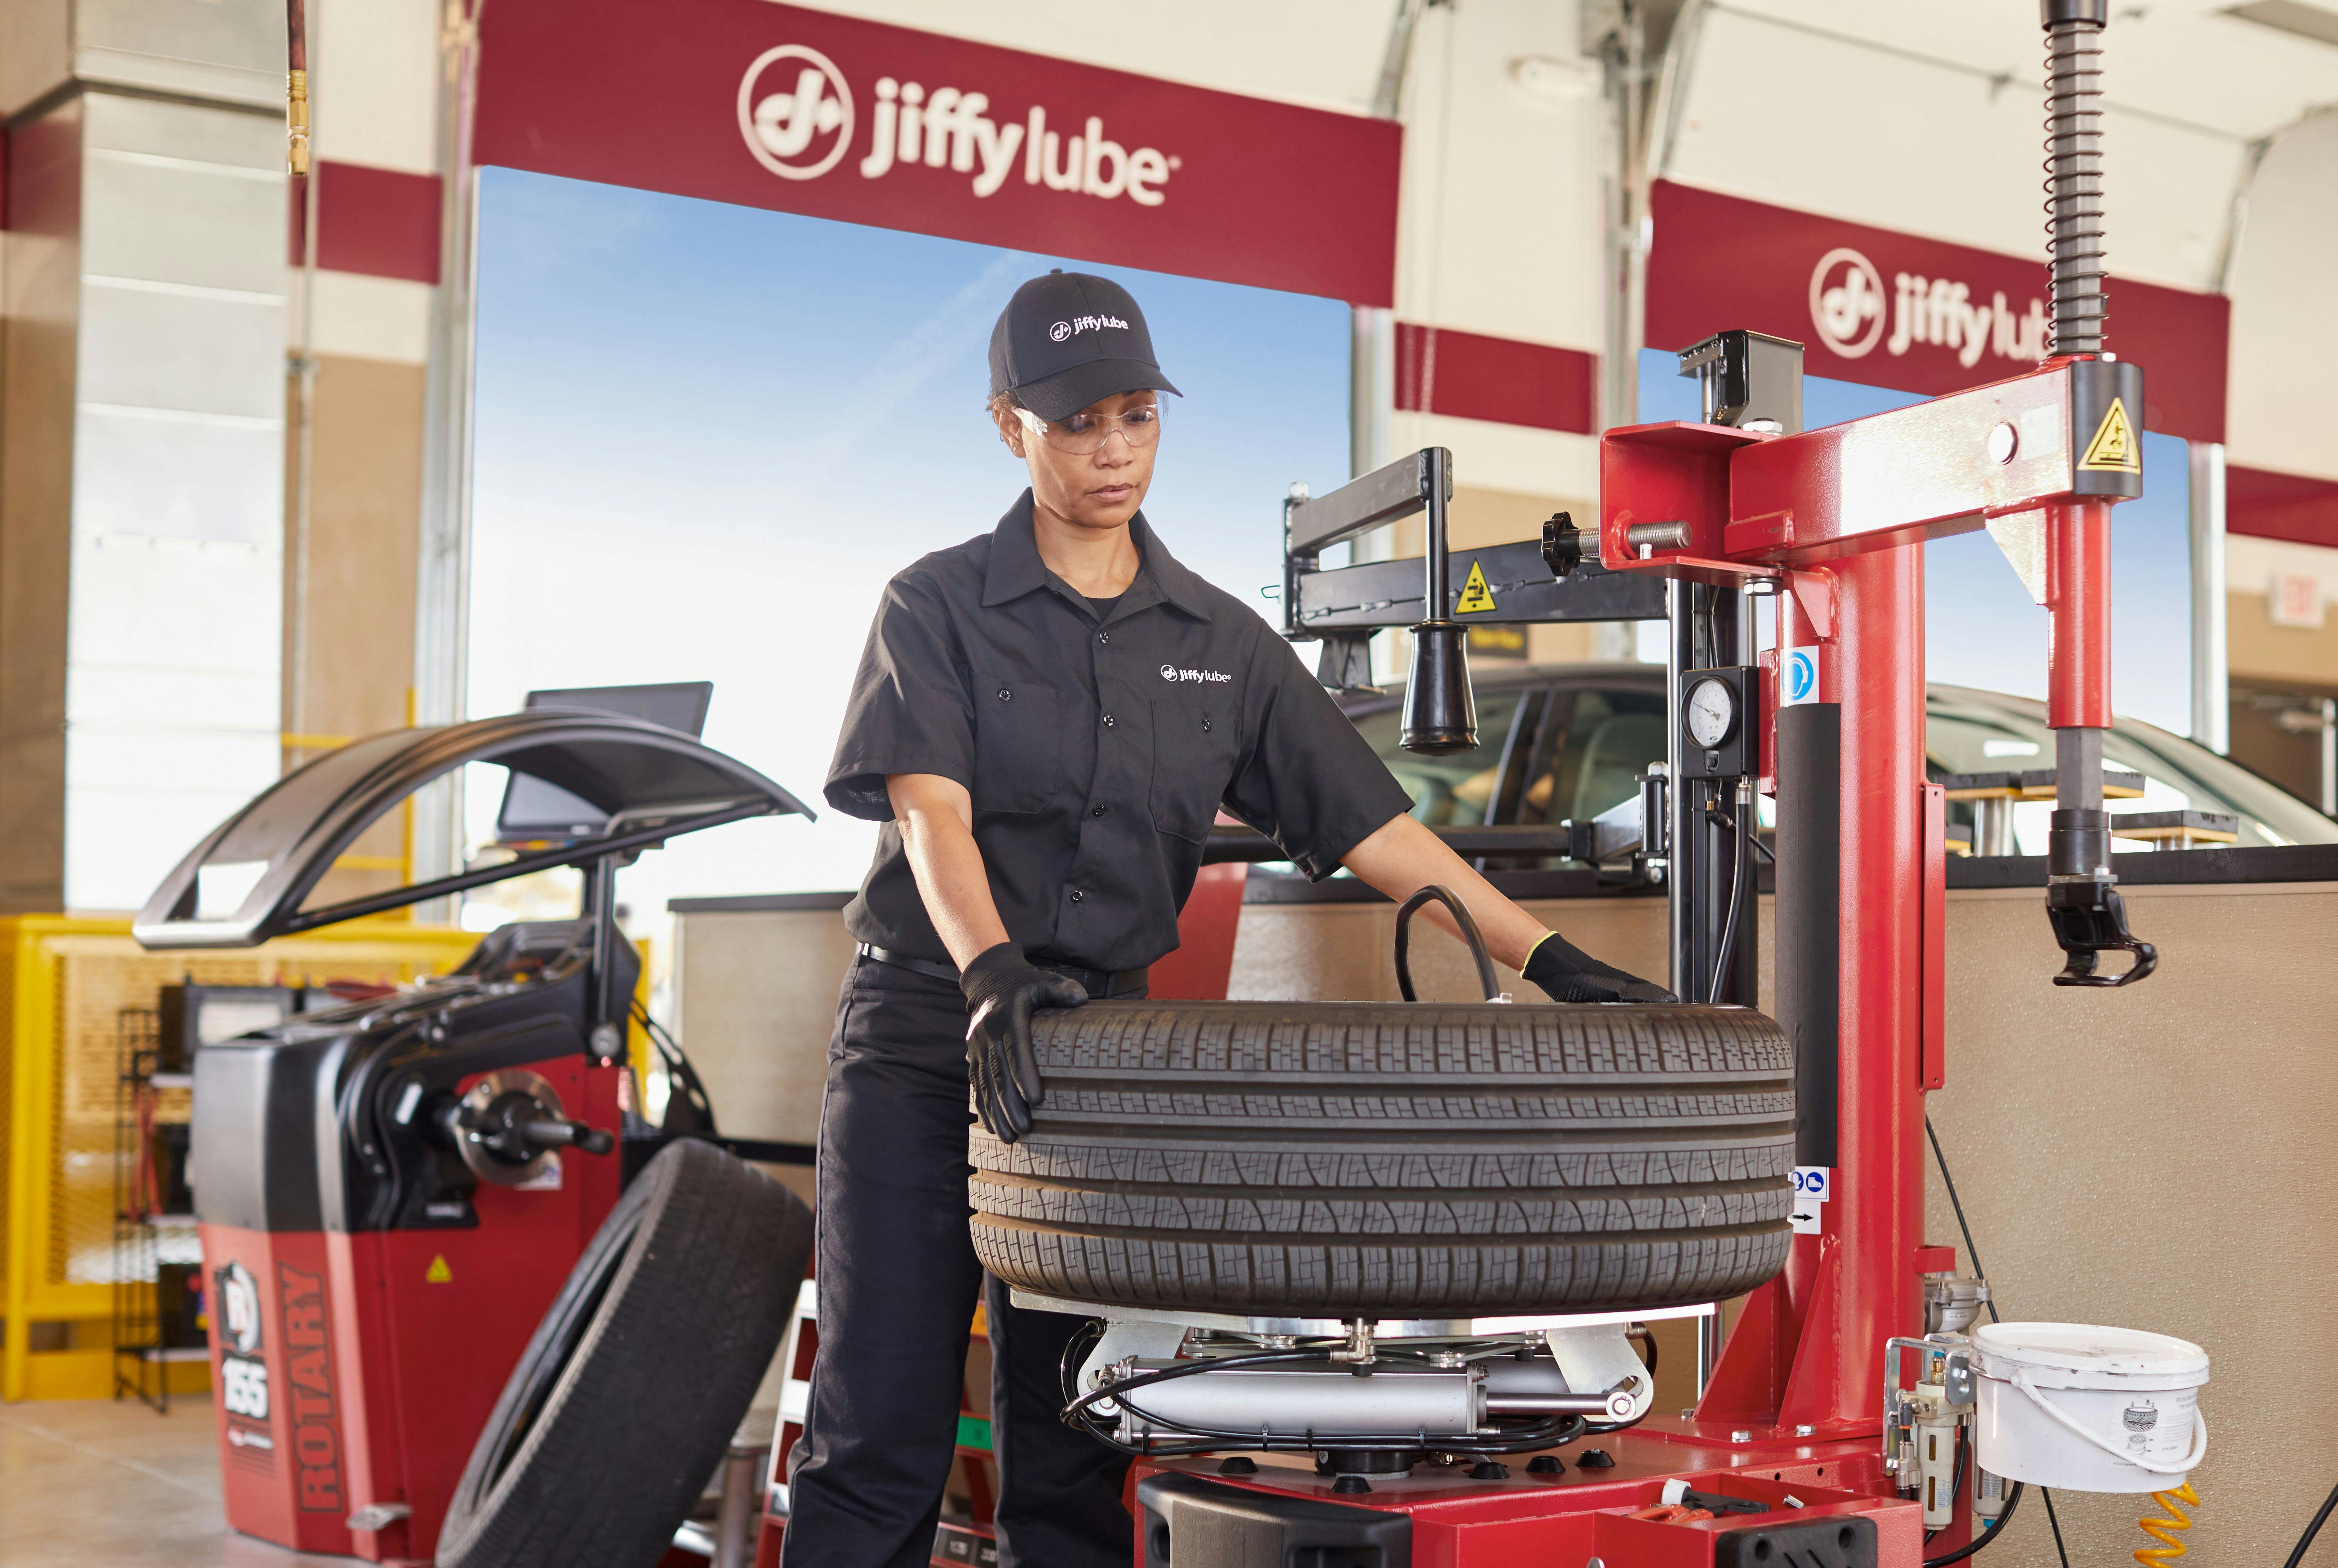 Jiffy Lube technician preparing a new tire